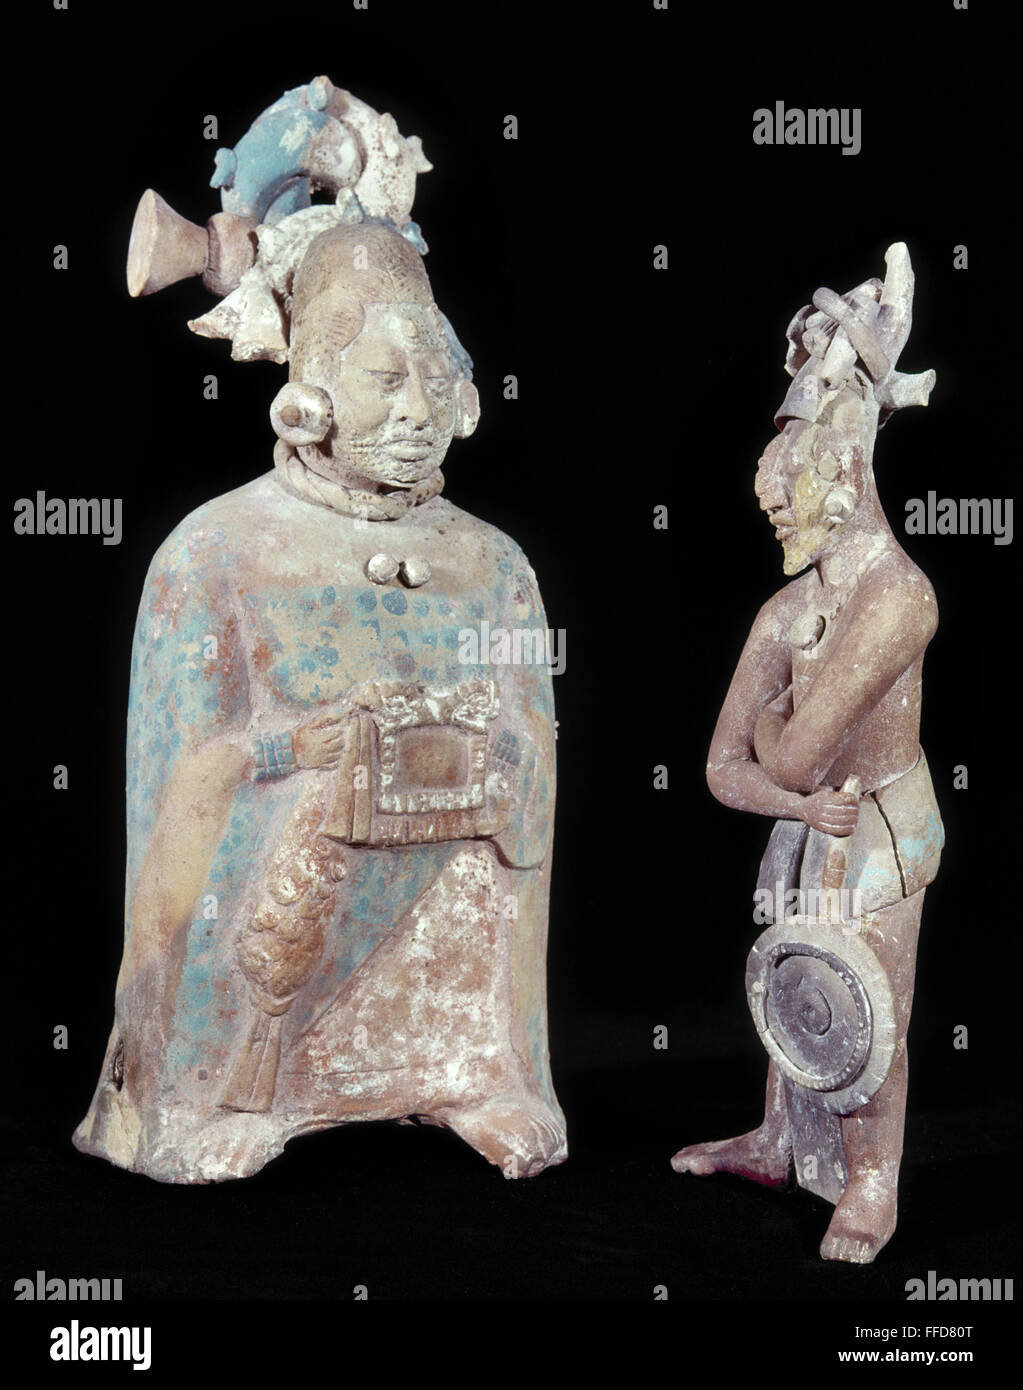 Las figuras mayas, 700-900 D.C. /nA mujer Maya ricamente vestida con cicatrices en el rostro, ya sea para el sacrificio o la vanidad. El hombre de la derecha está llevando un ventilador. De Jaina, Campeche, México, 700-900 D.C. Alturas: 21,2 cm y 19 cm respectivamente. Foto de stock